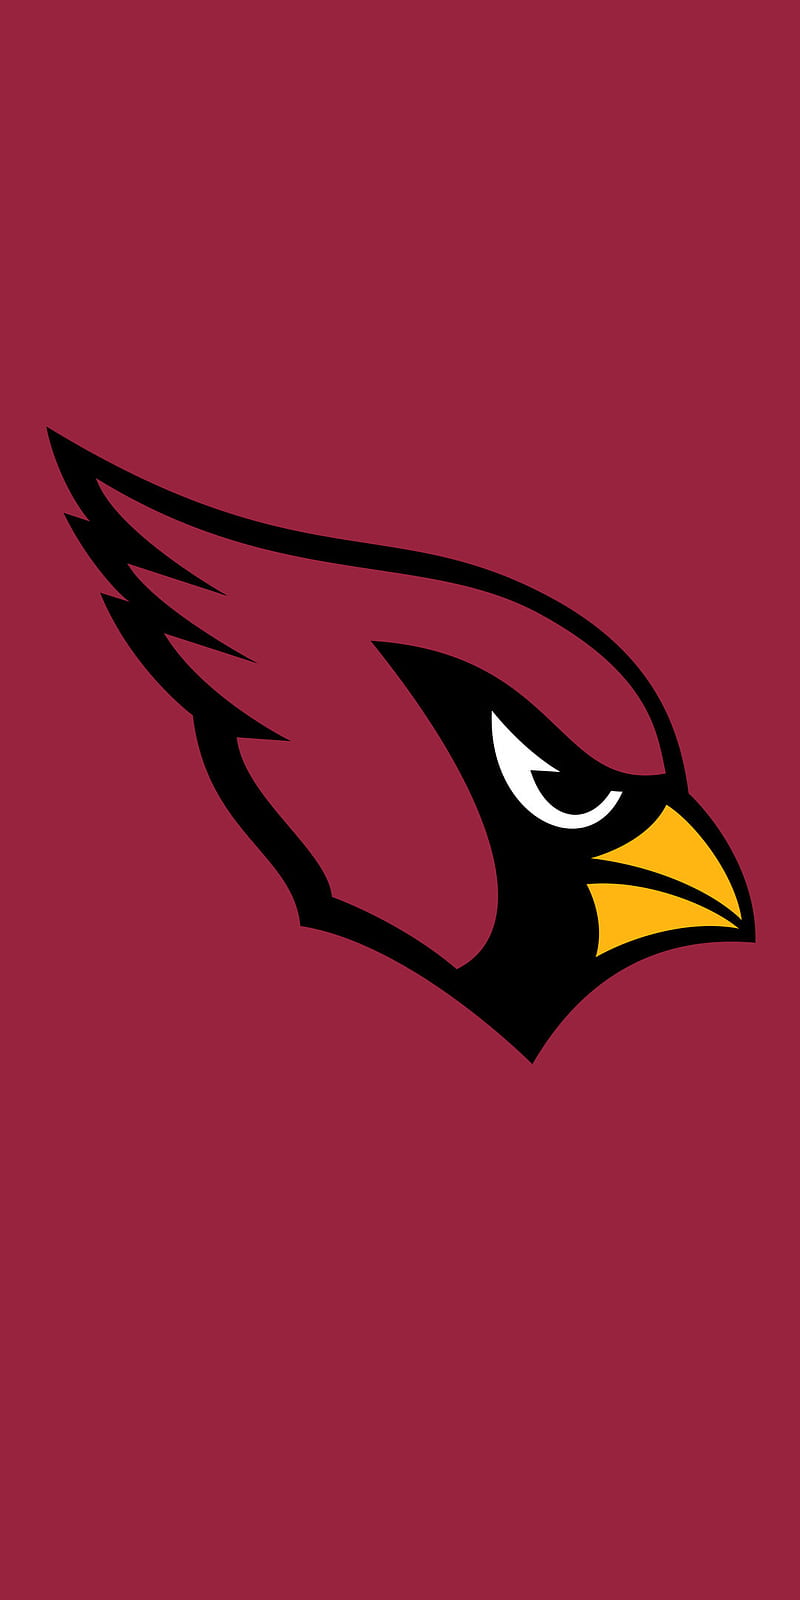 Arizona cardinals, nfl, logo, football